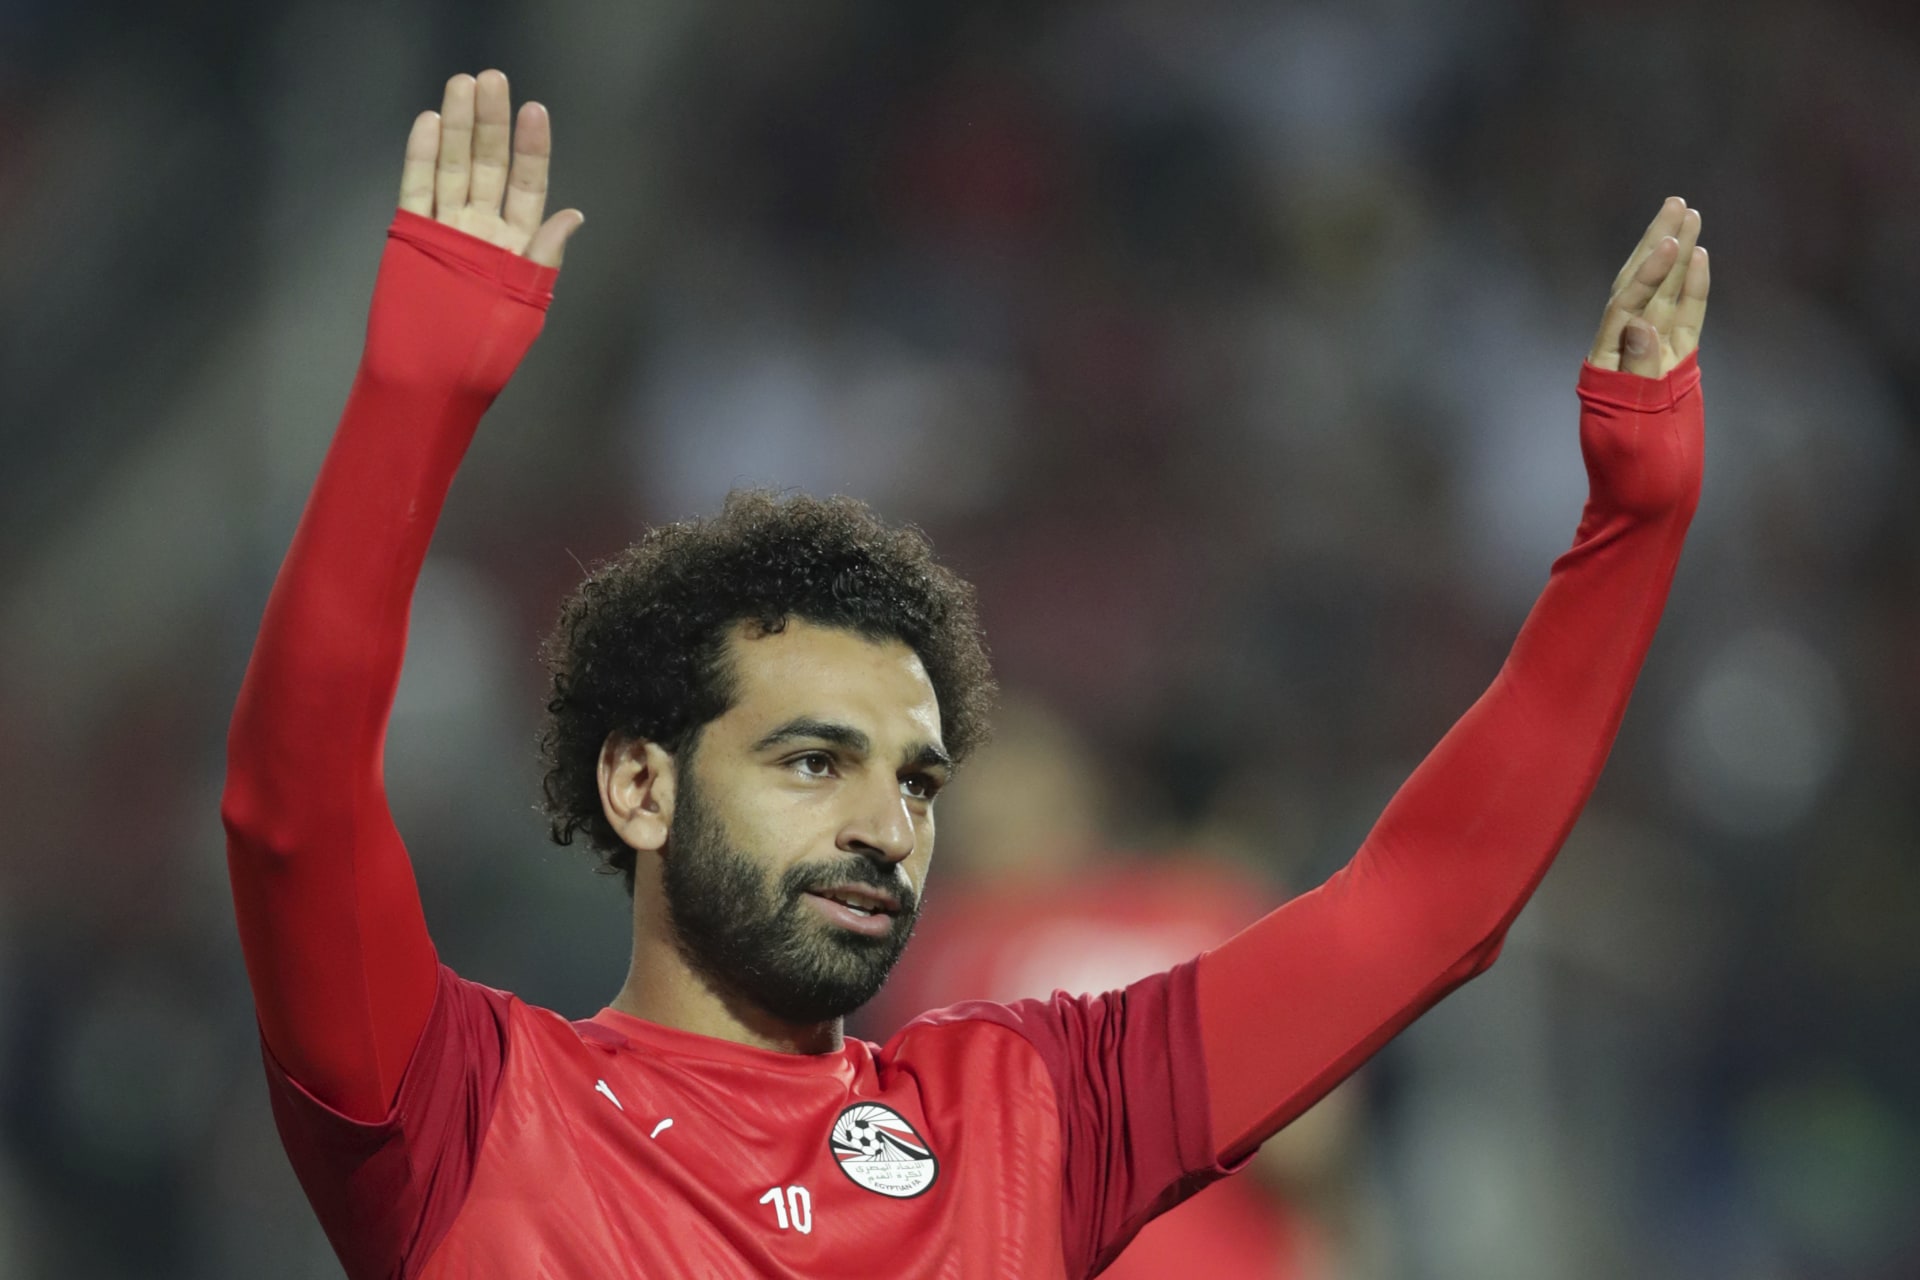 Útočník anglického FC Liverpool Mohamed Salah nemůže v září nastoupit v egyptské reprezentaci kvůli karanténním pravidlům ve Velké Británii.